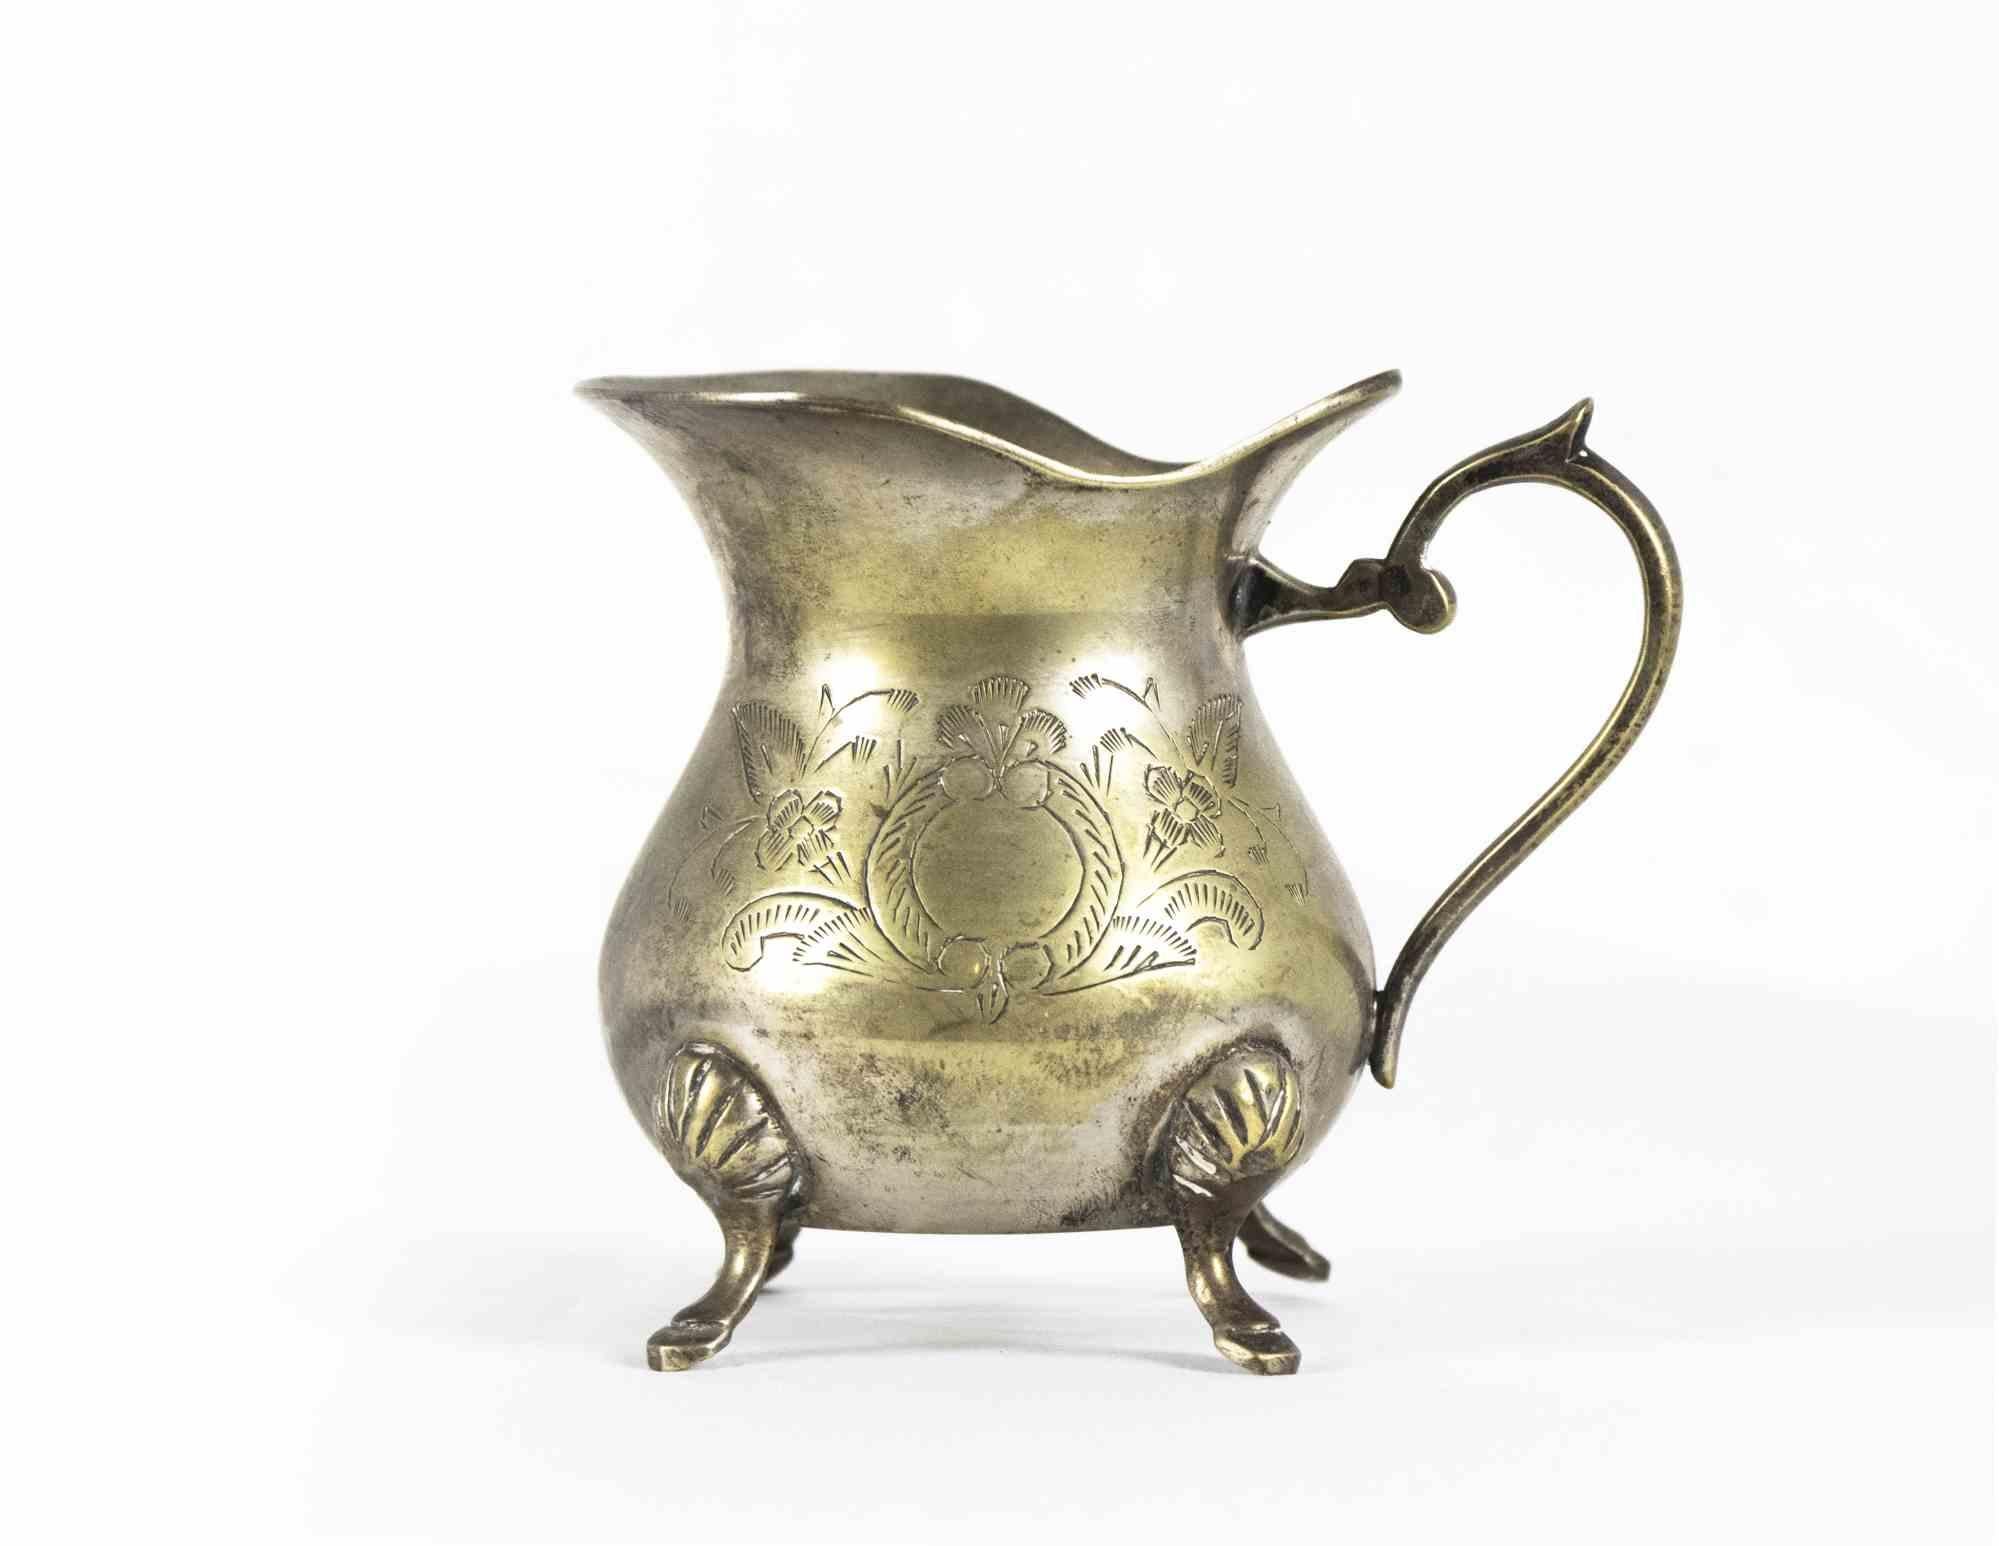 Teeservice aus Messing ist ein originales Dekorationsobjekt, das Anfang des 20. Jahrhunderts in Europa hergestellt wurde.

Das Set ist aus Messing mit gemeißelten Verzierungen gefertigt. 

Das Set enthält: eine Teekanne, eine Kaffeekanne, eine